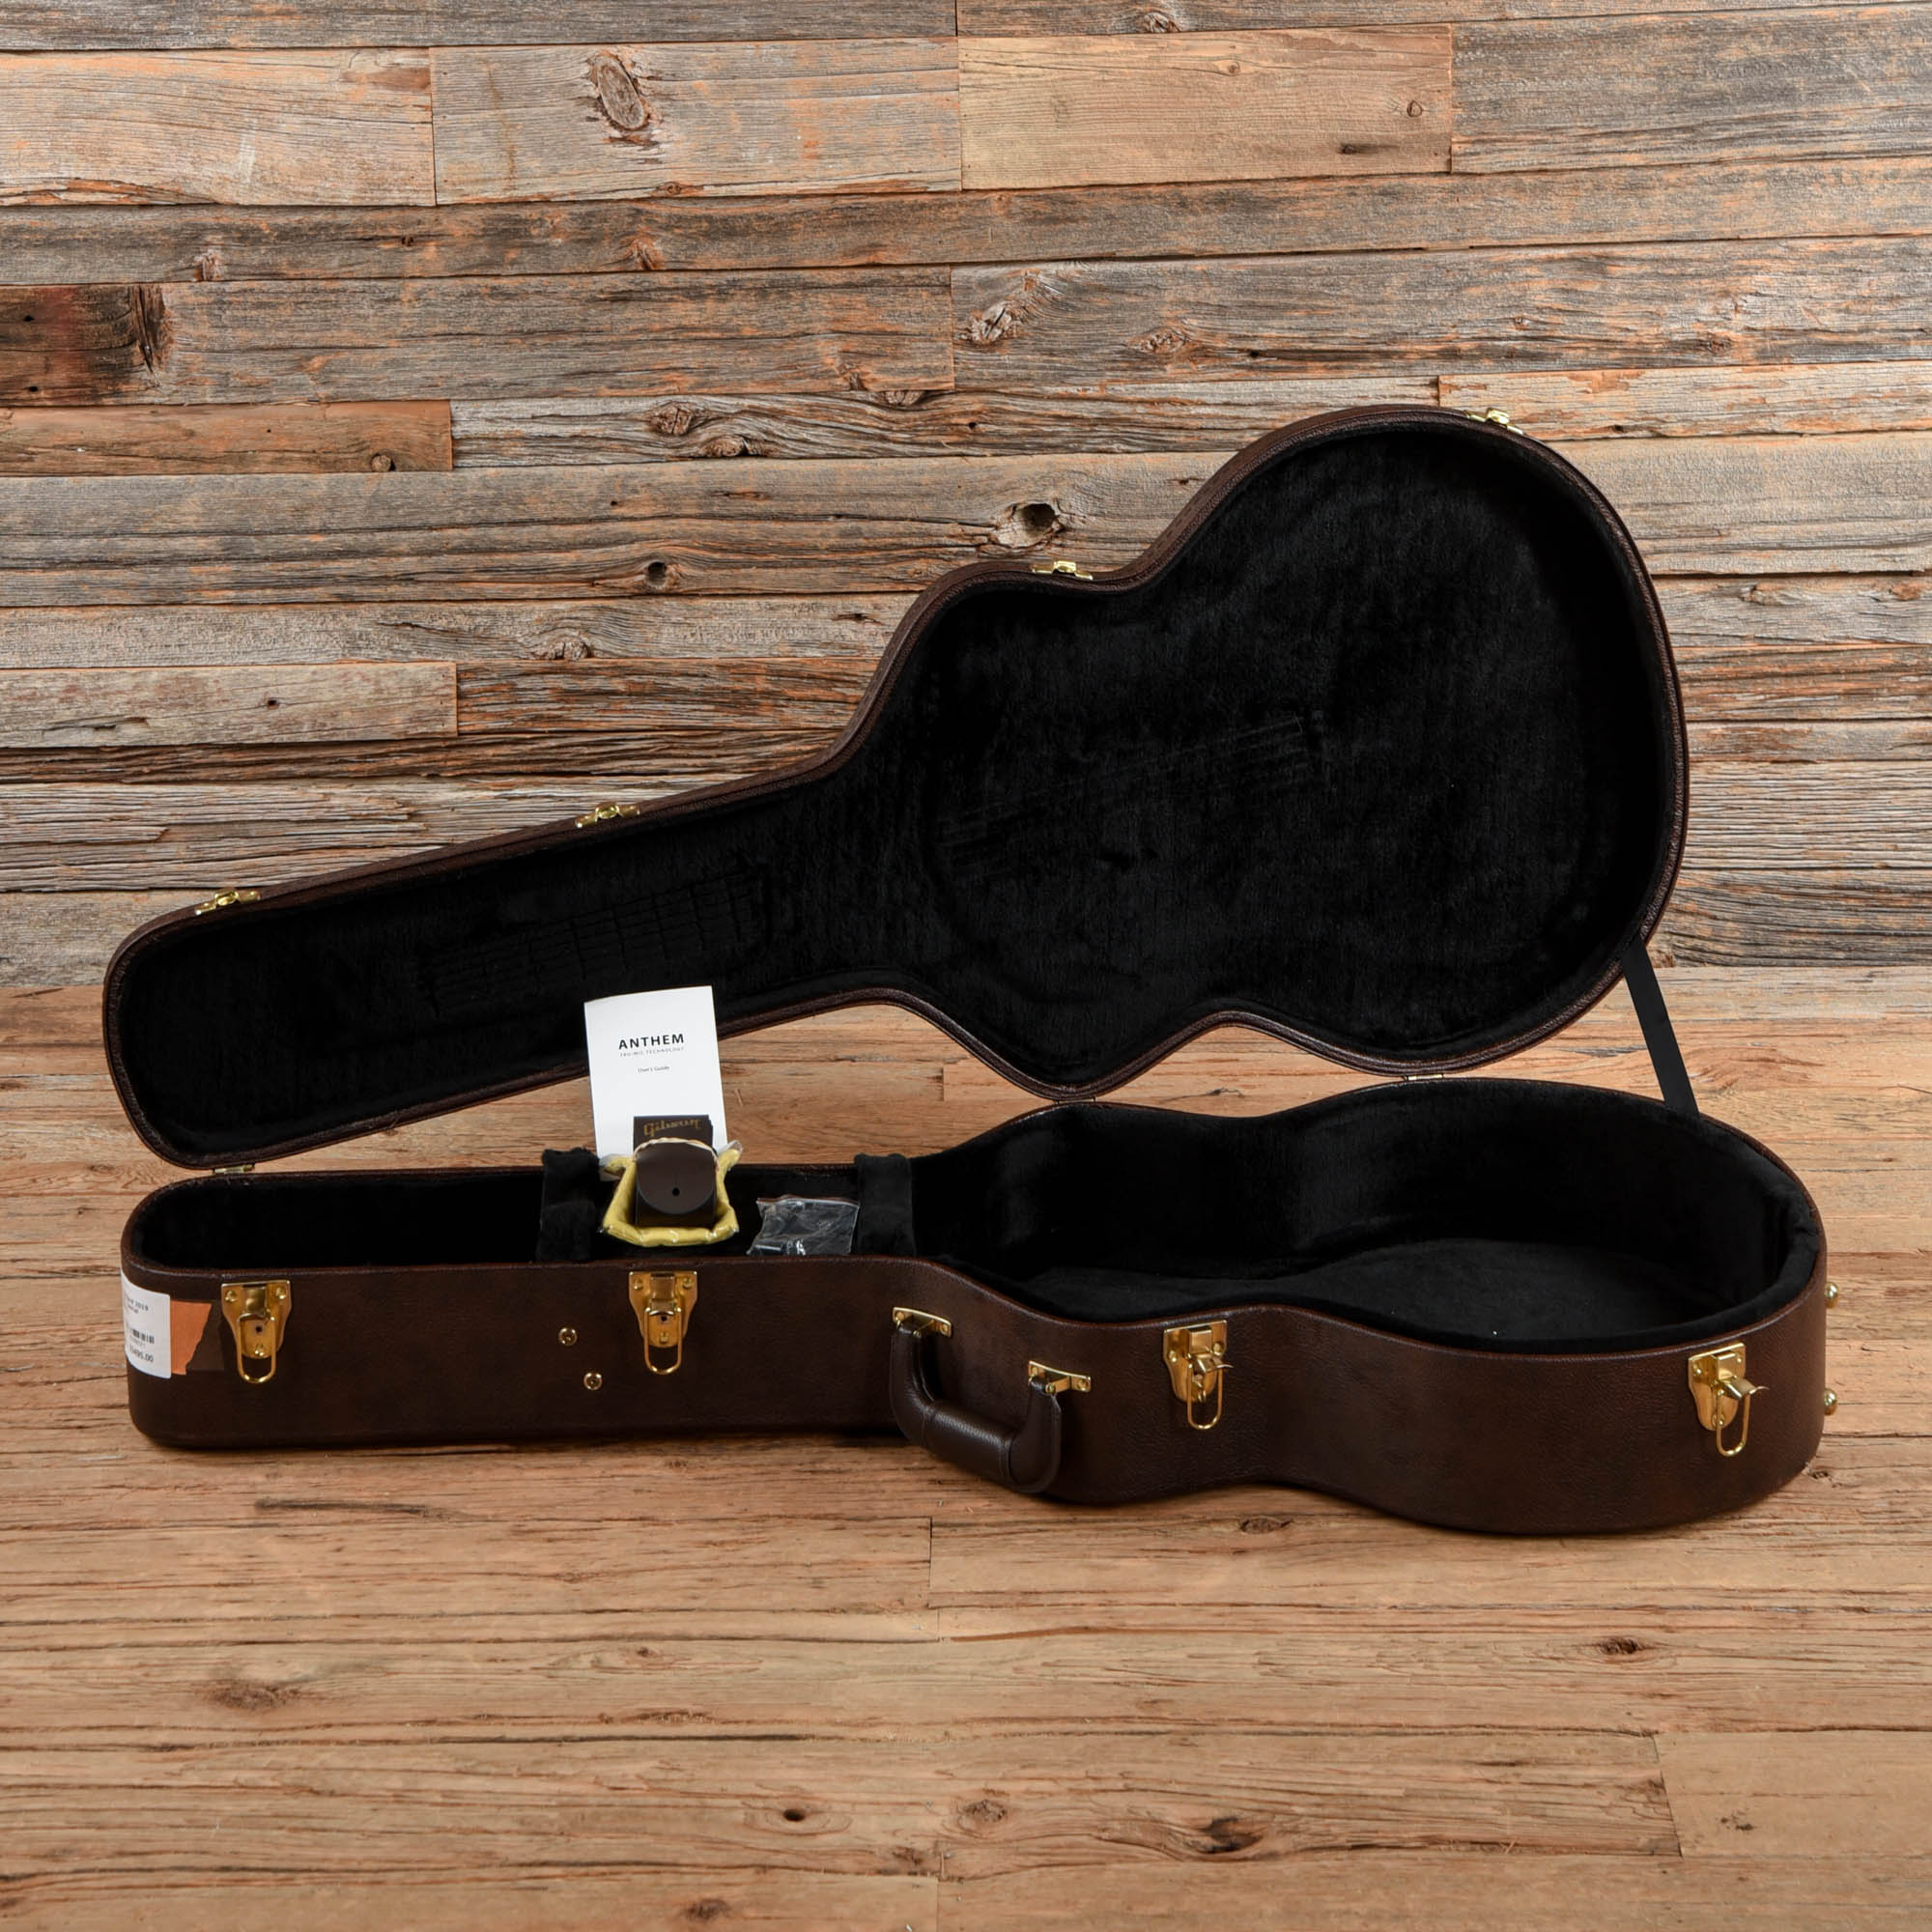 Gibson SJ-200 Standard Ebony 2019